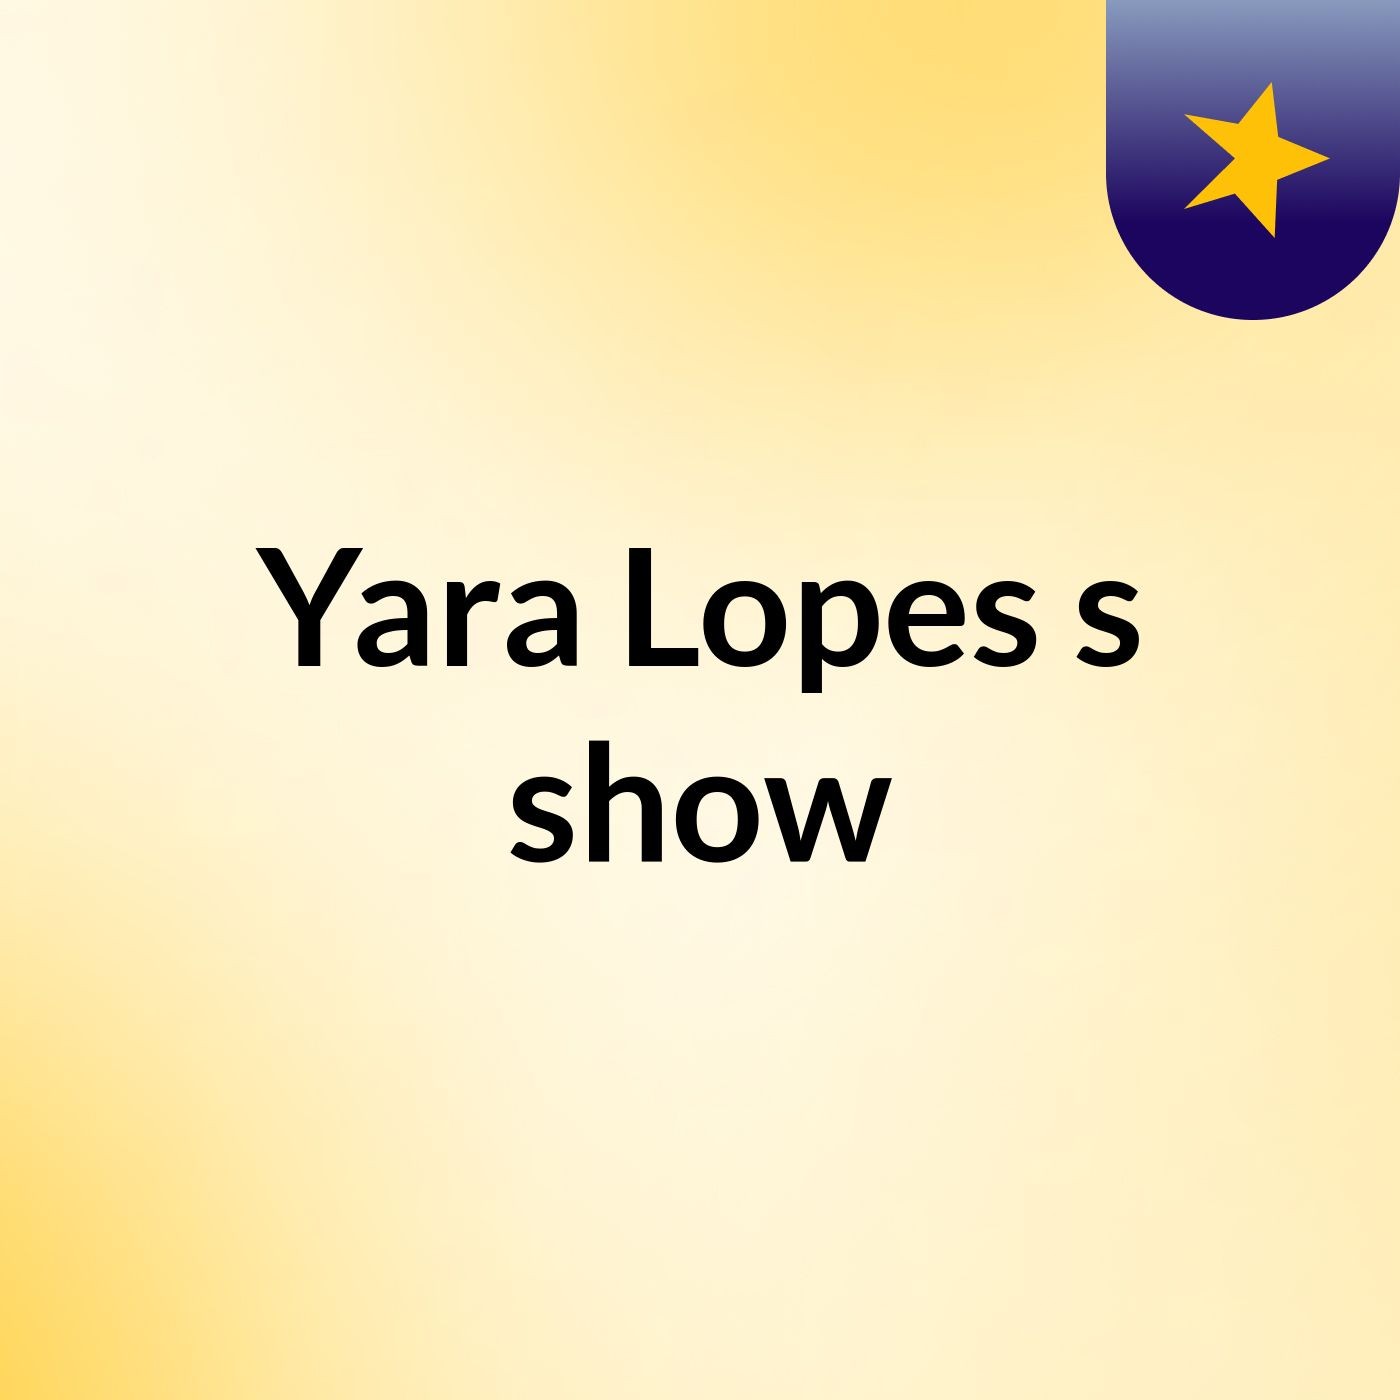 Yara Lopes's show